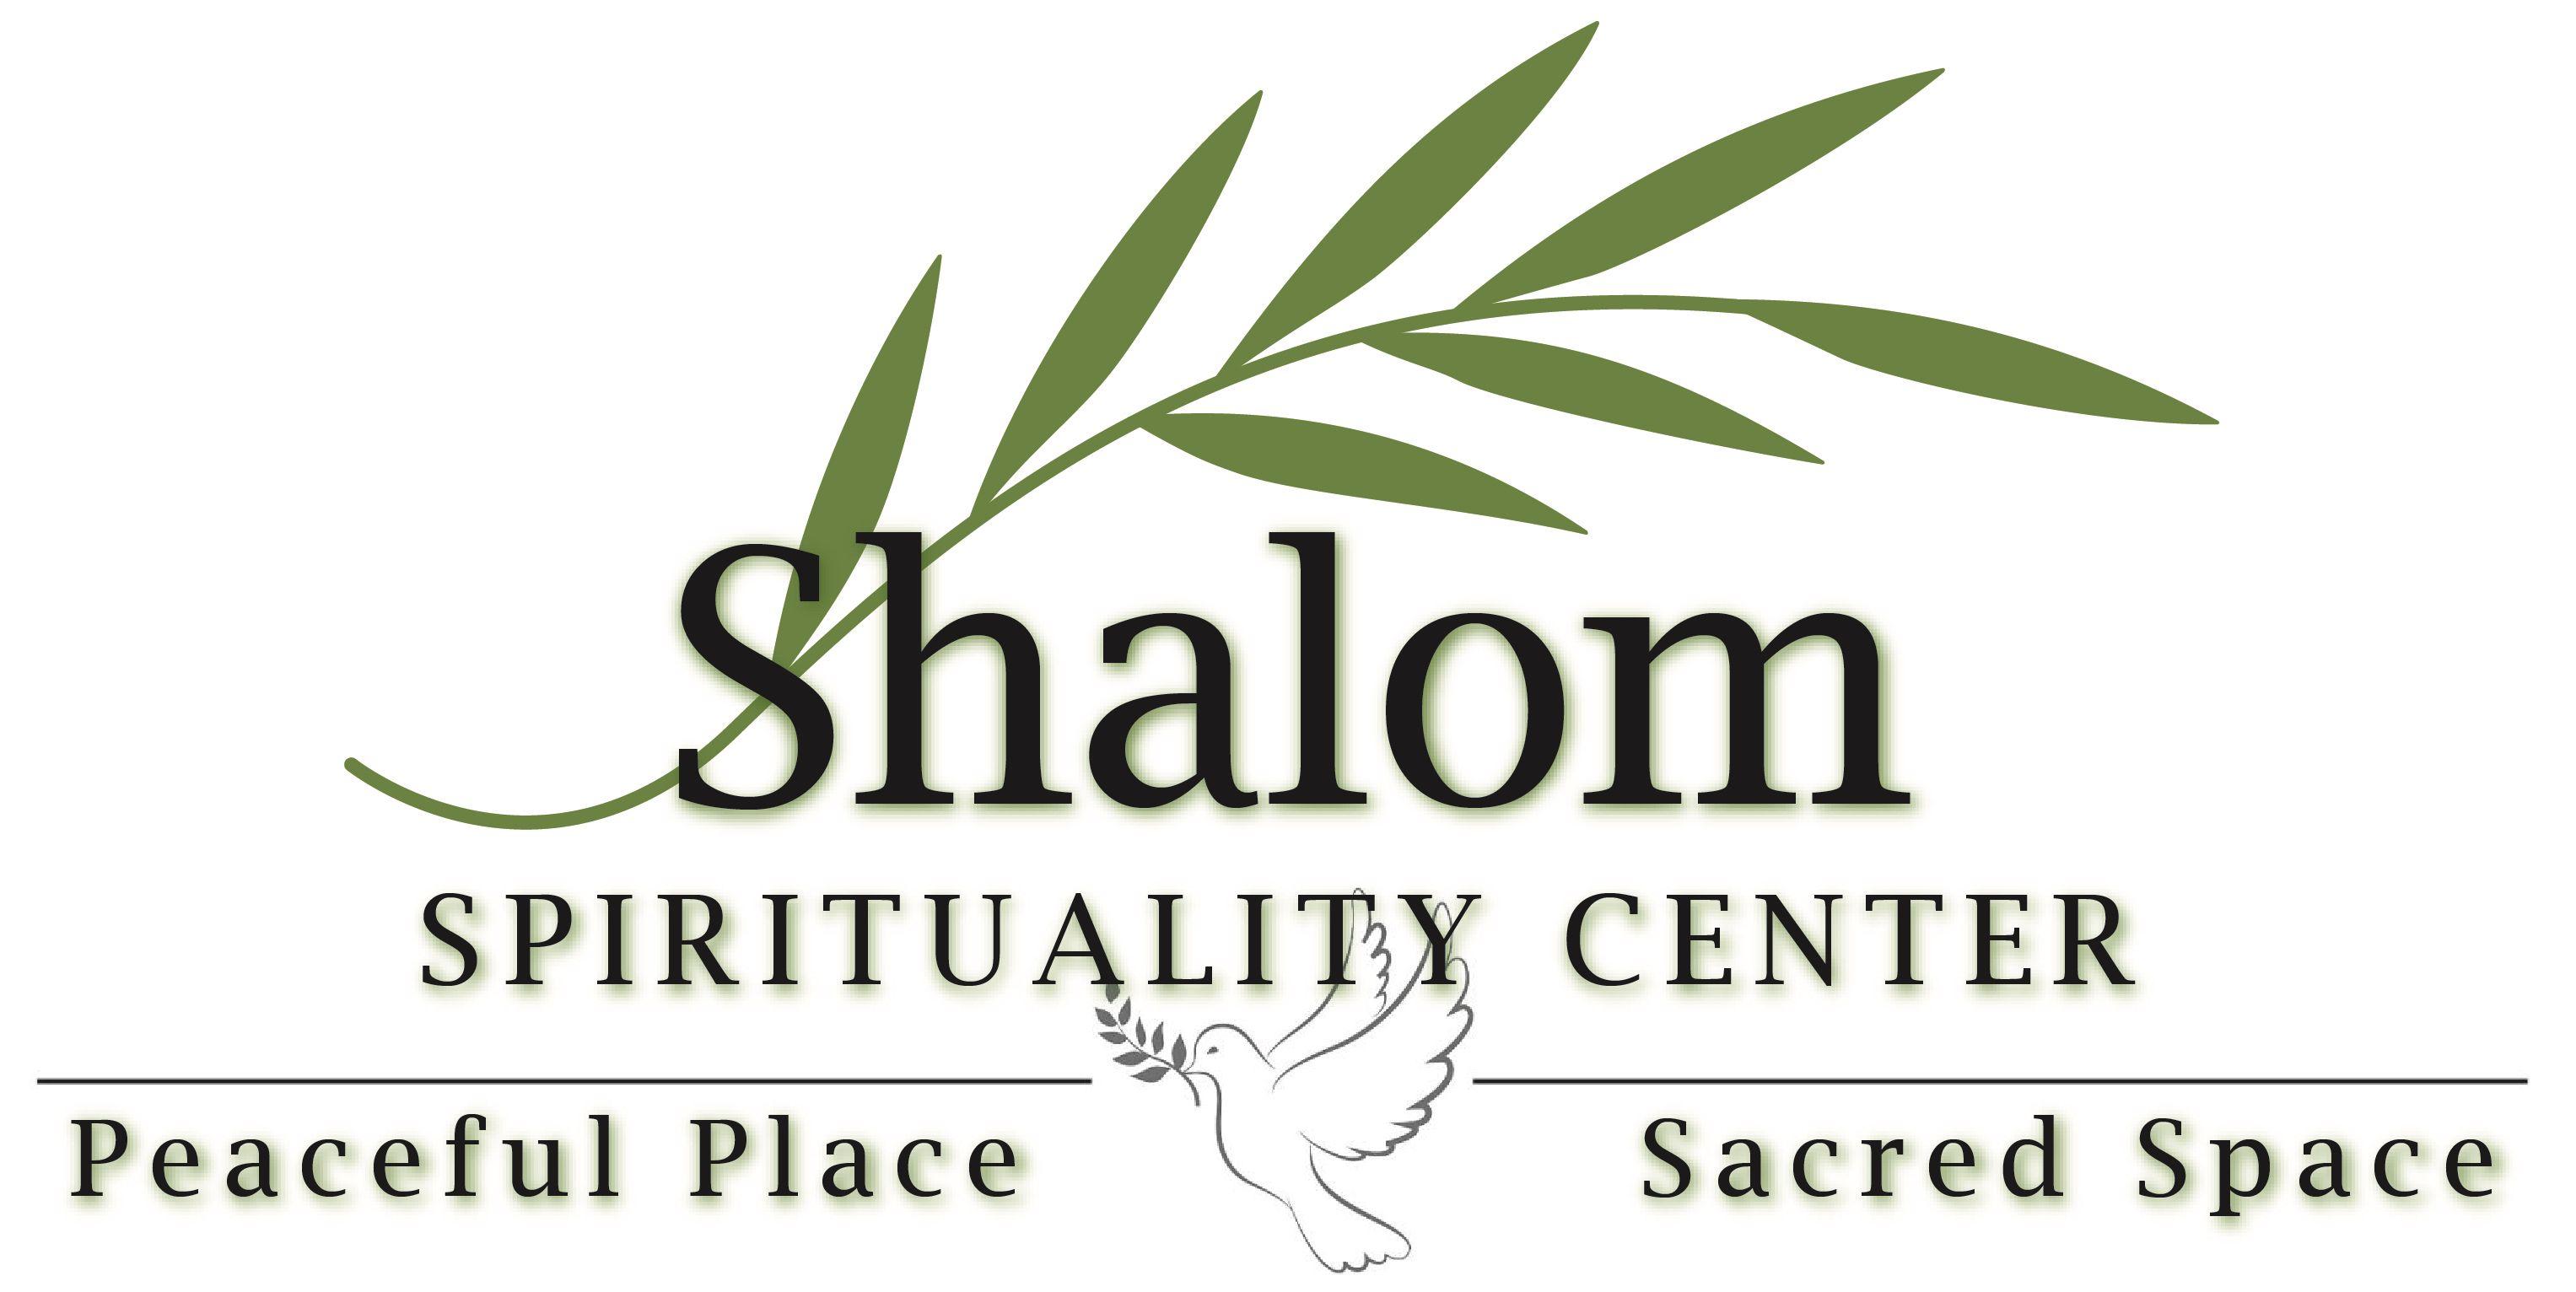 Shalom Logo - Welcome to Shalom Spirituality Center | Home